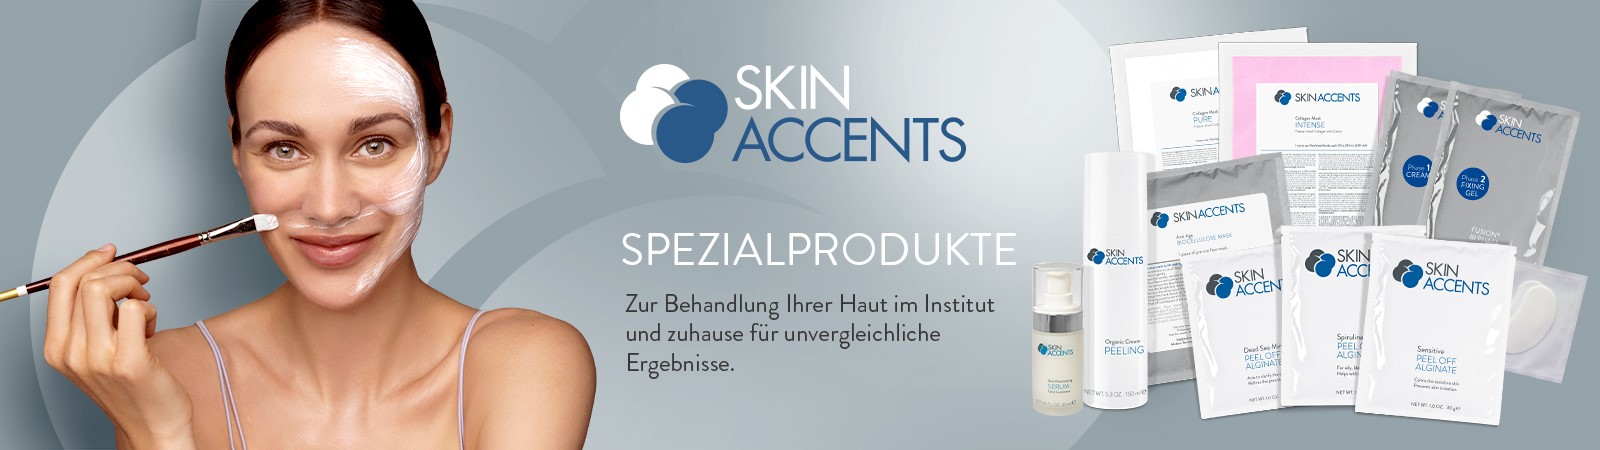 Skin Accents Behandlungsprodukte